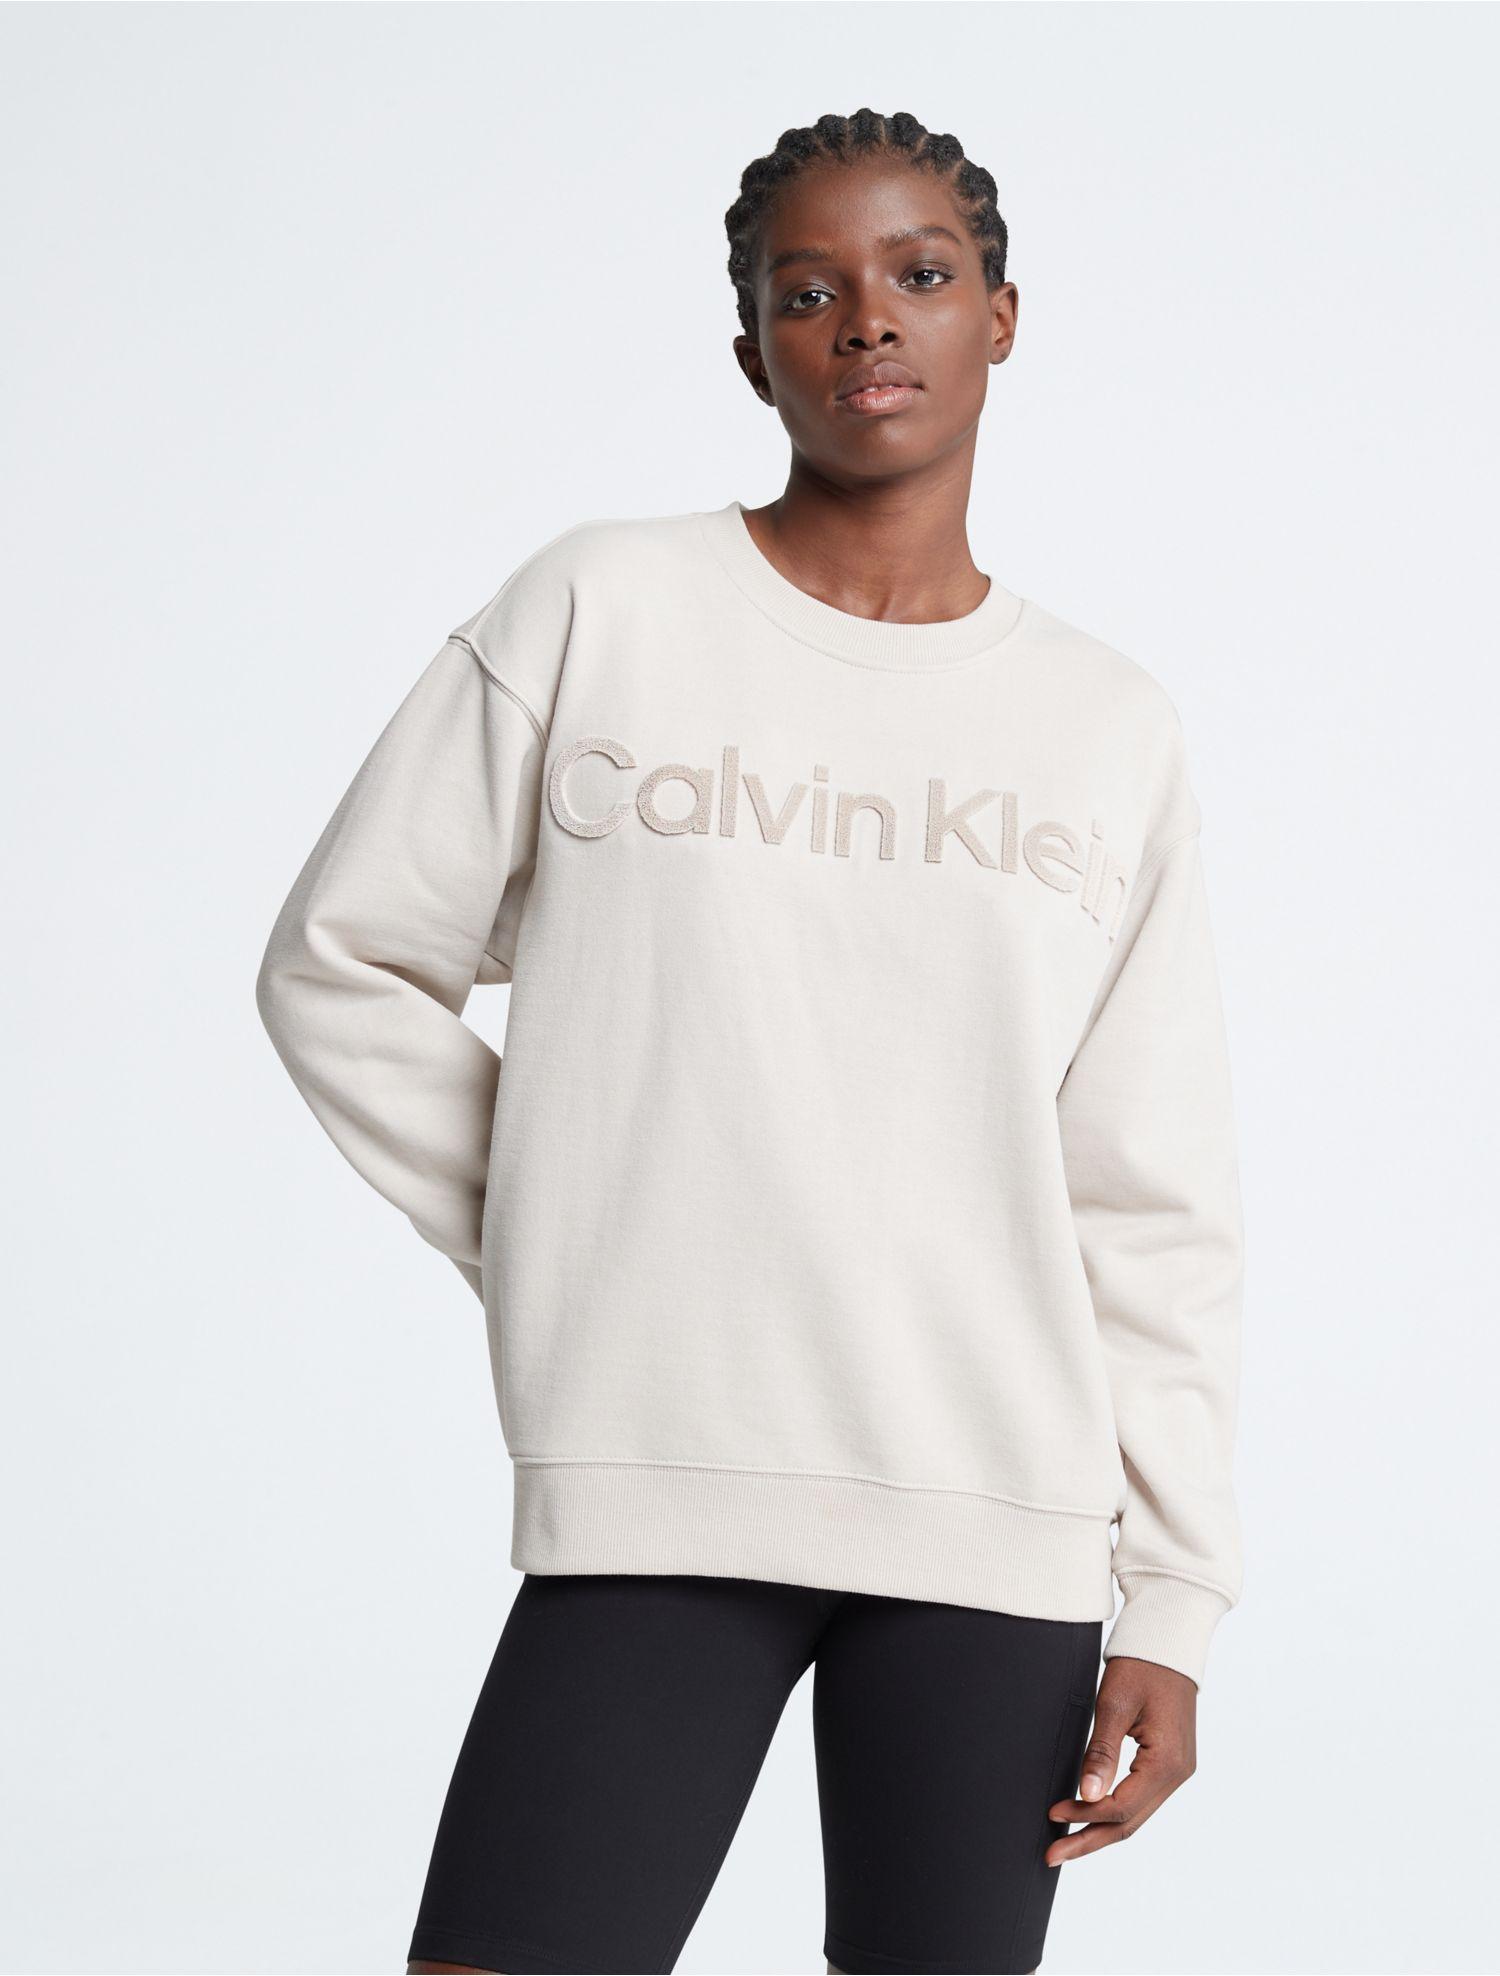 Calvin Klein Logo Crew Neck T-Shirt, White